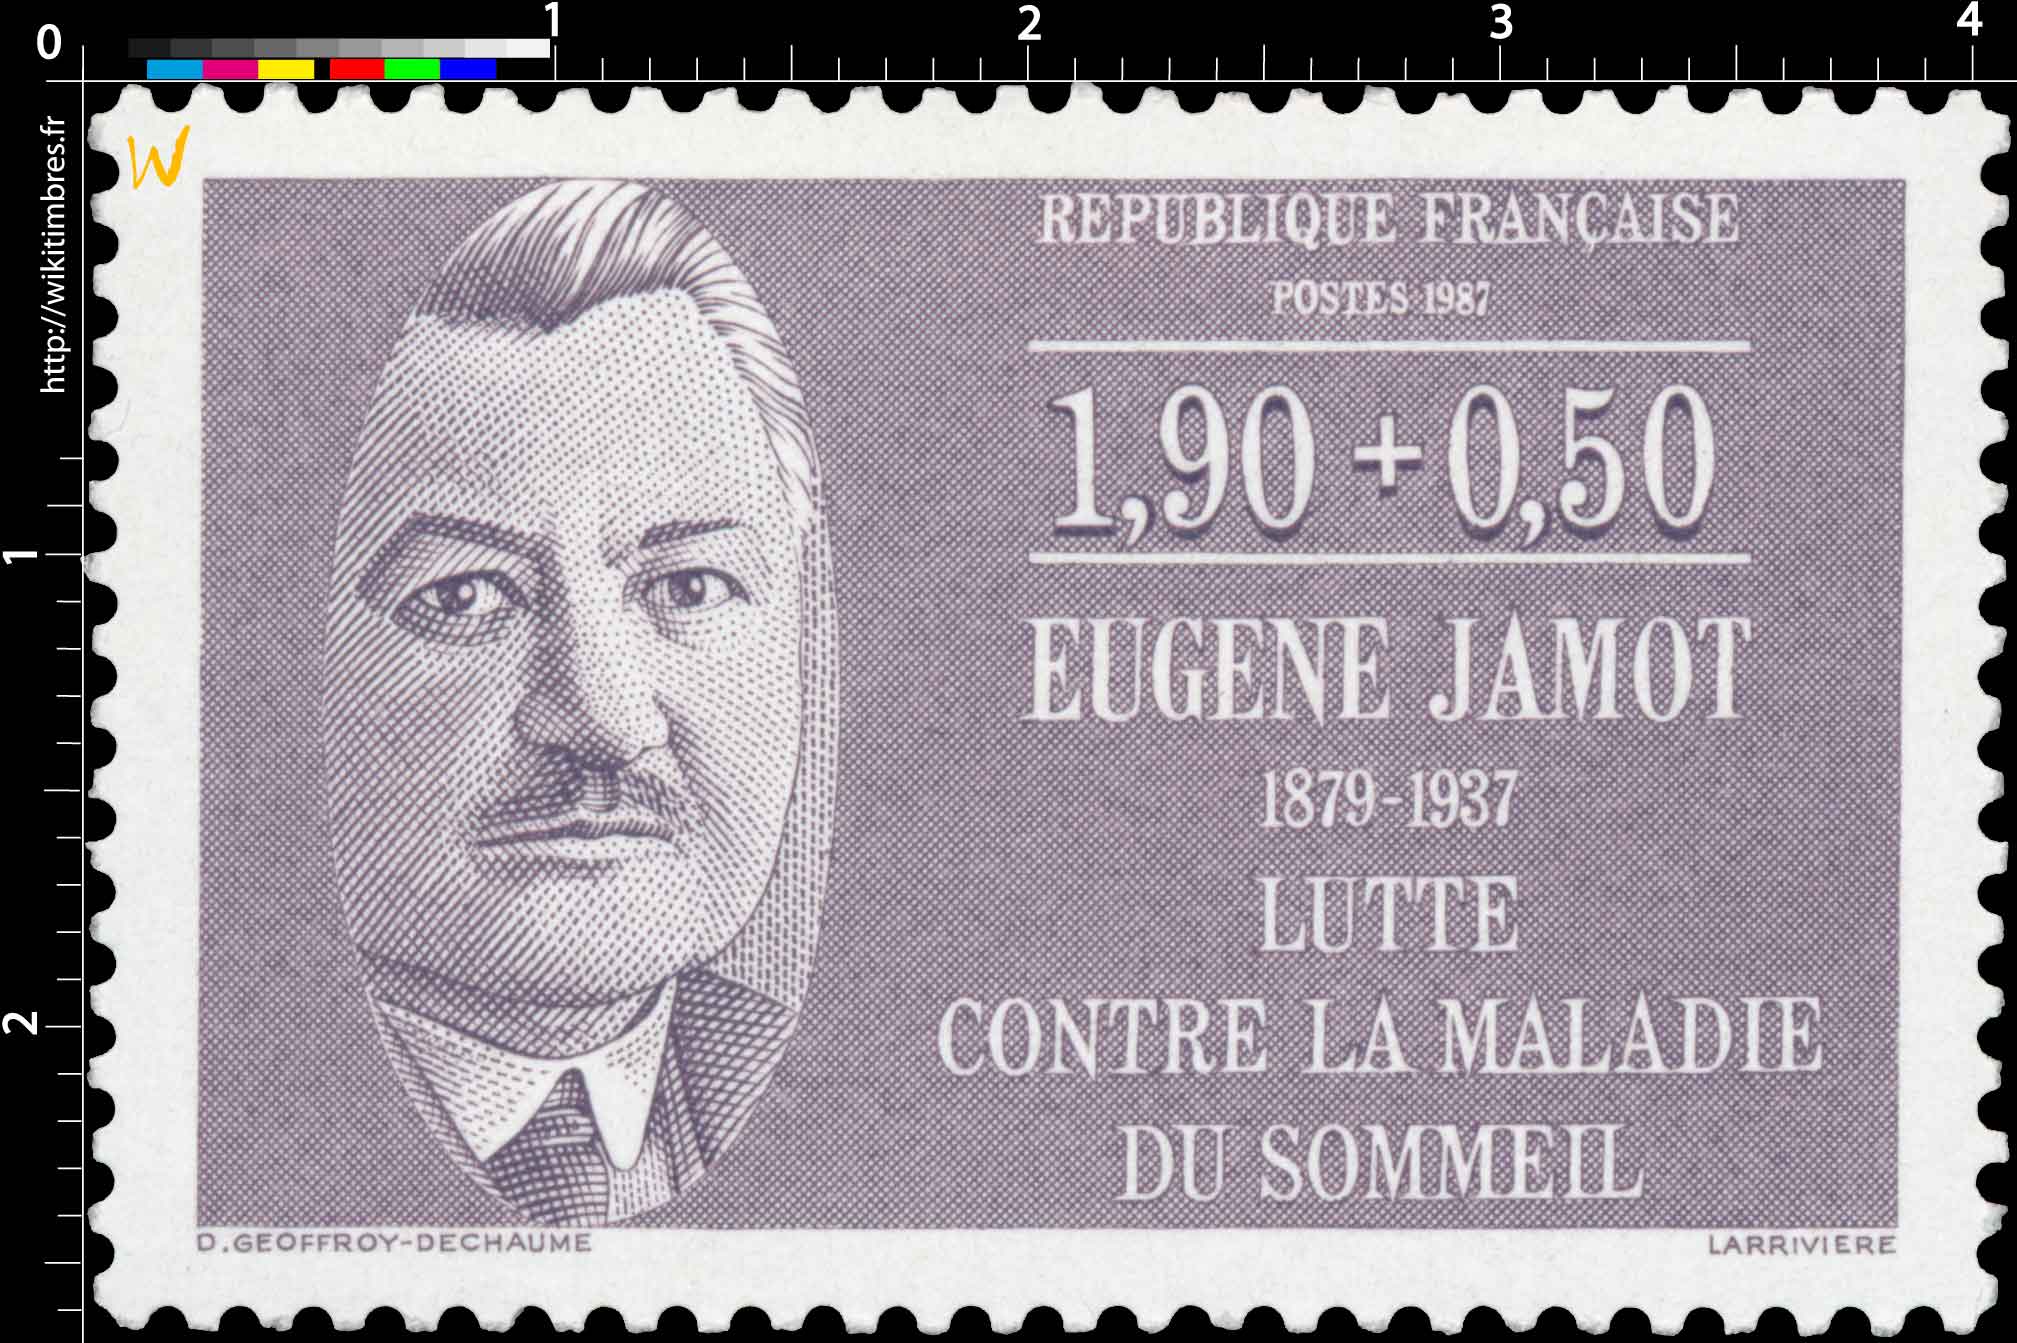 1987 EUGÈNE JAMOT 1879-1937 LUTTE CONTRE LA MALADIE DU SOMMEIL